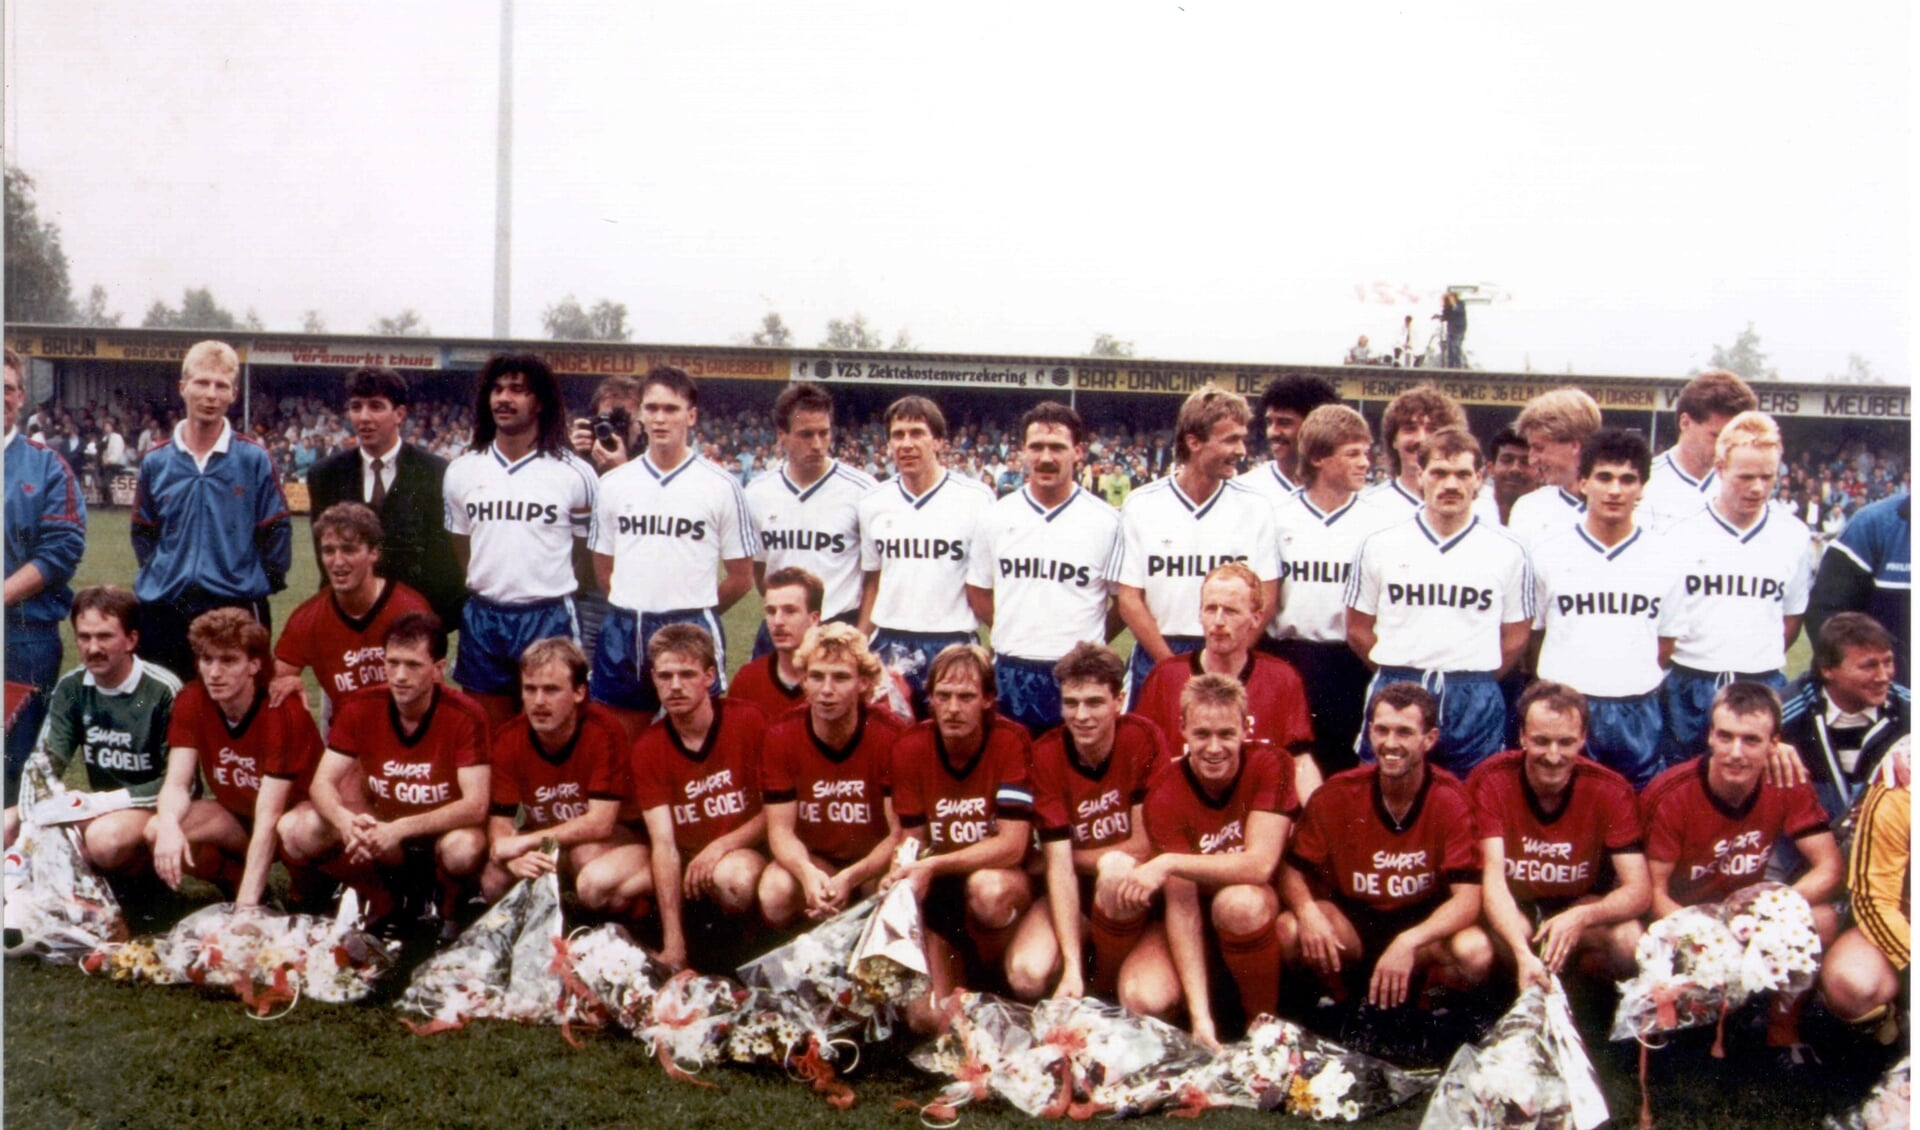 Het Nederlands Elftal, 9 juli 1988 samen met De Treffers. Een gedenkwaardig moment in de clubgeschiedenis van De Treffers.